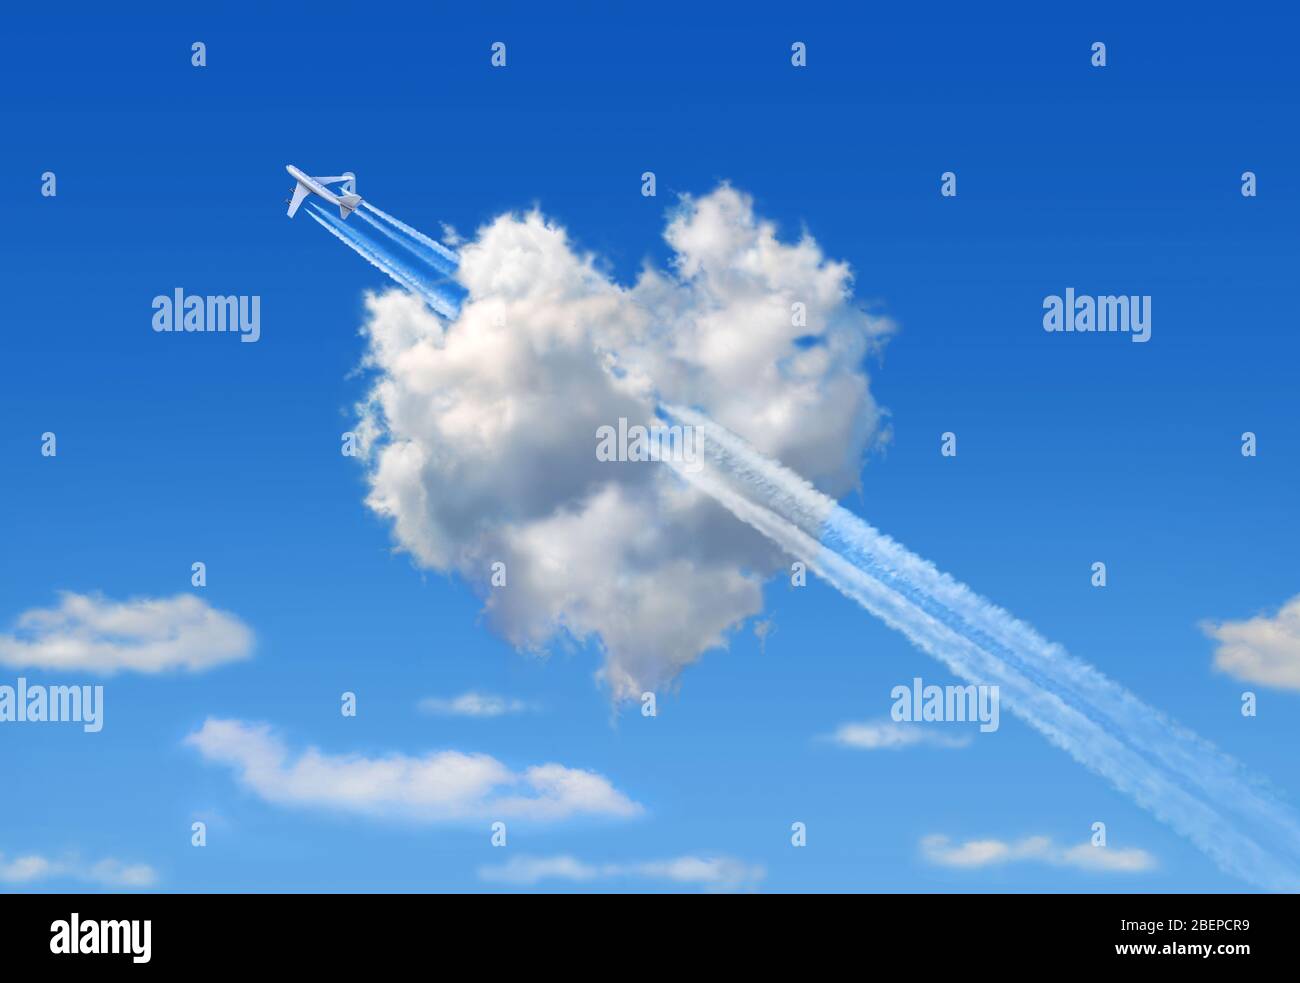 Nuvola soffice con la forma di un cuore in un cielo blu e un jumbo jet che volano attraverso di esso simboleggia una freccia come segno d'amore. Foto Stock